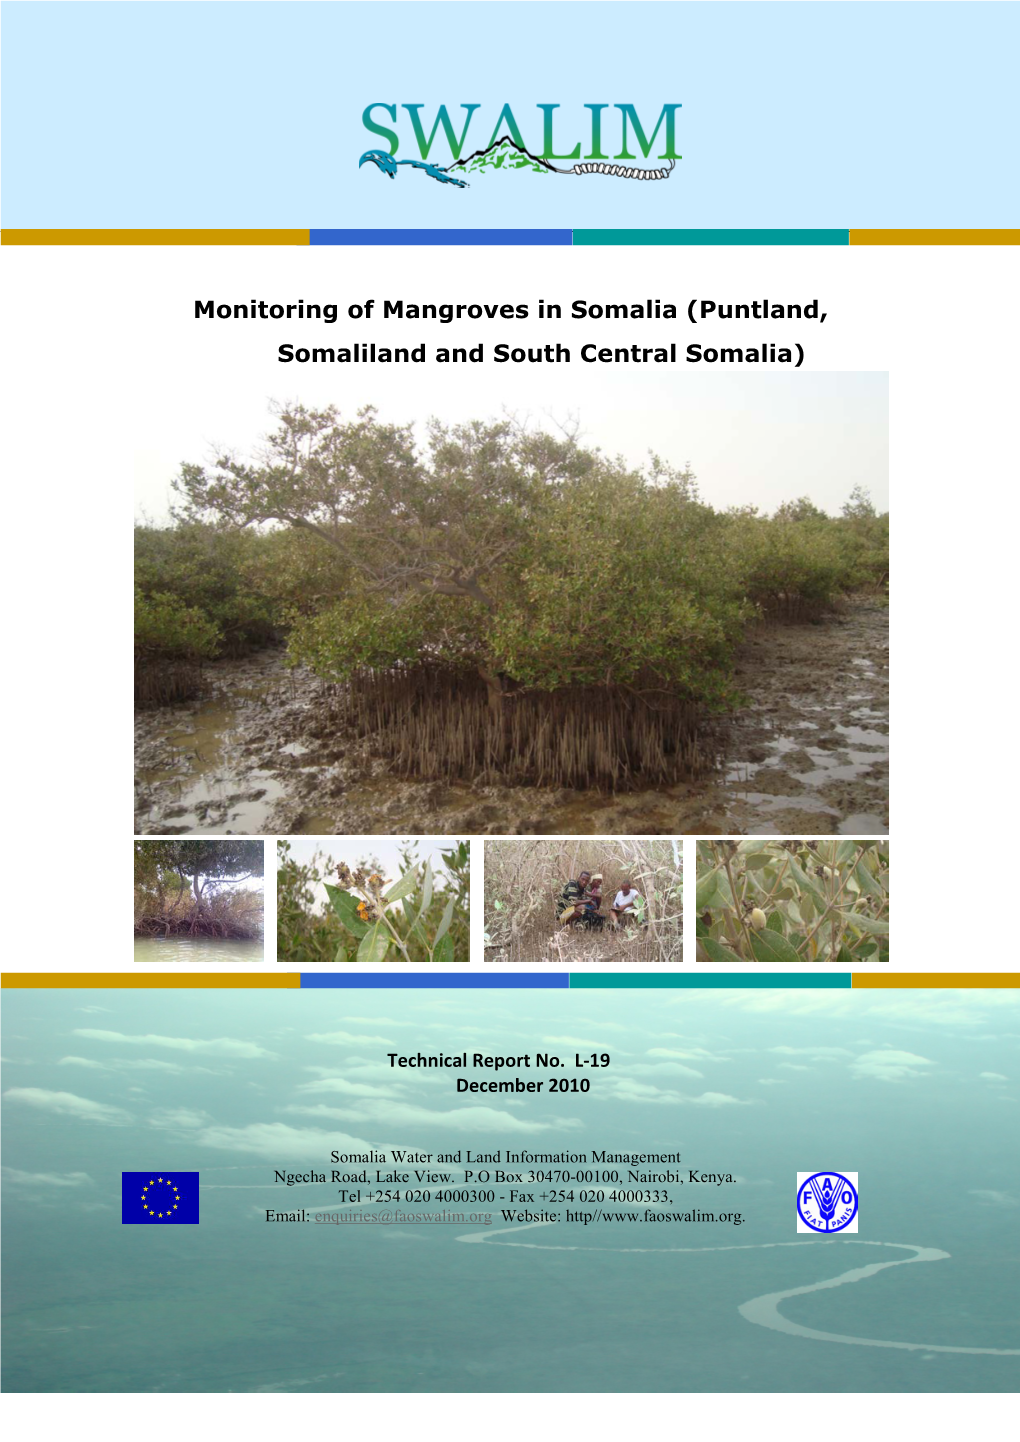 Monitoring of Mangroves in Somalia (Puntland, Somaliland and South Central Somalia)